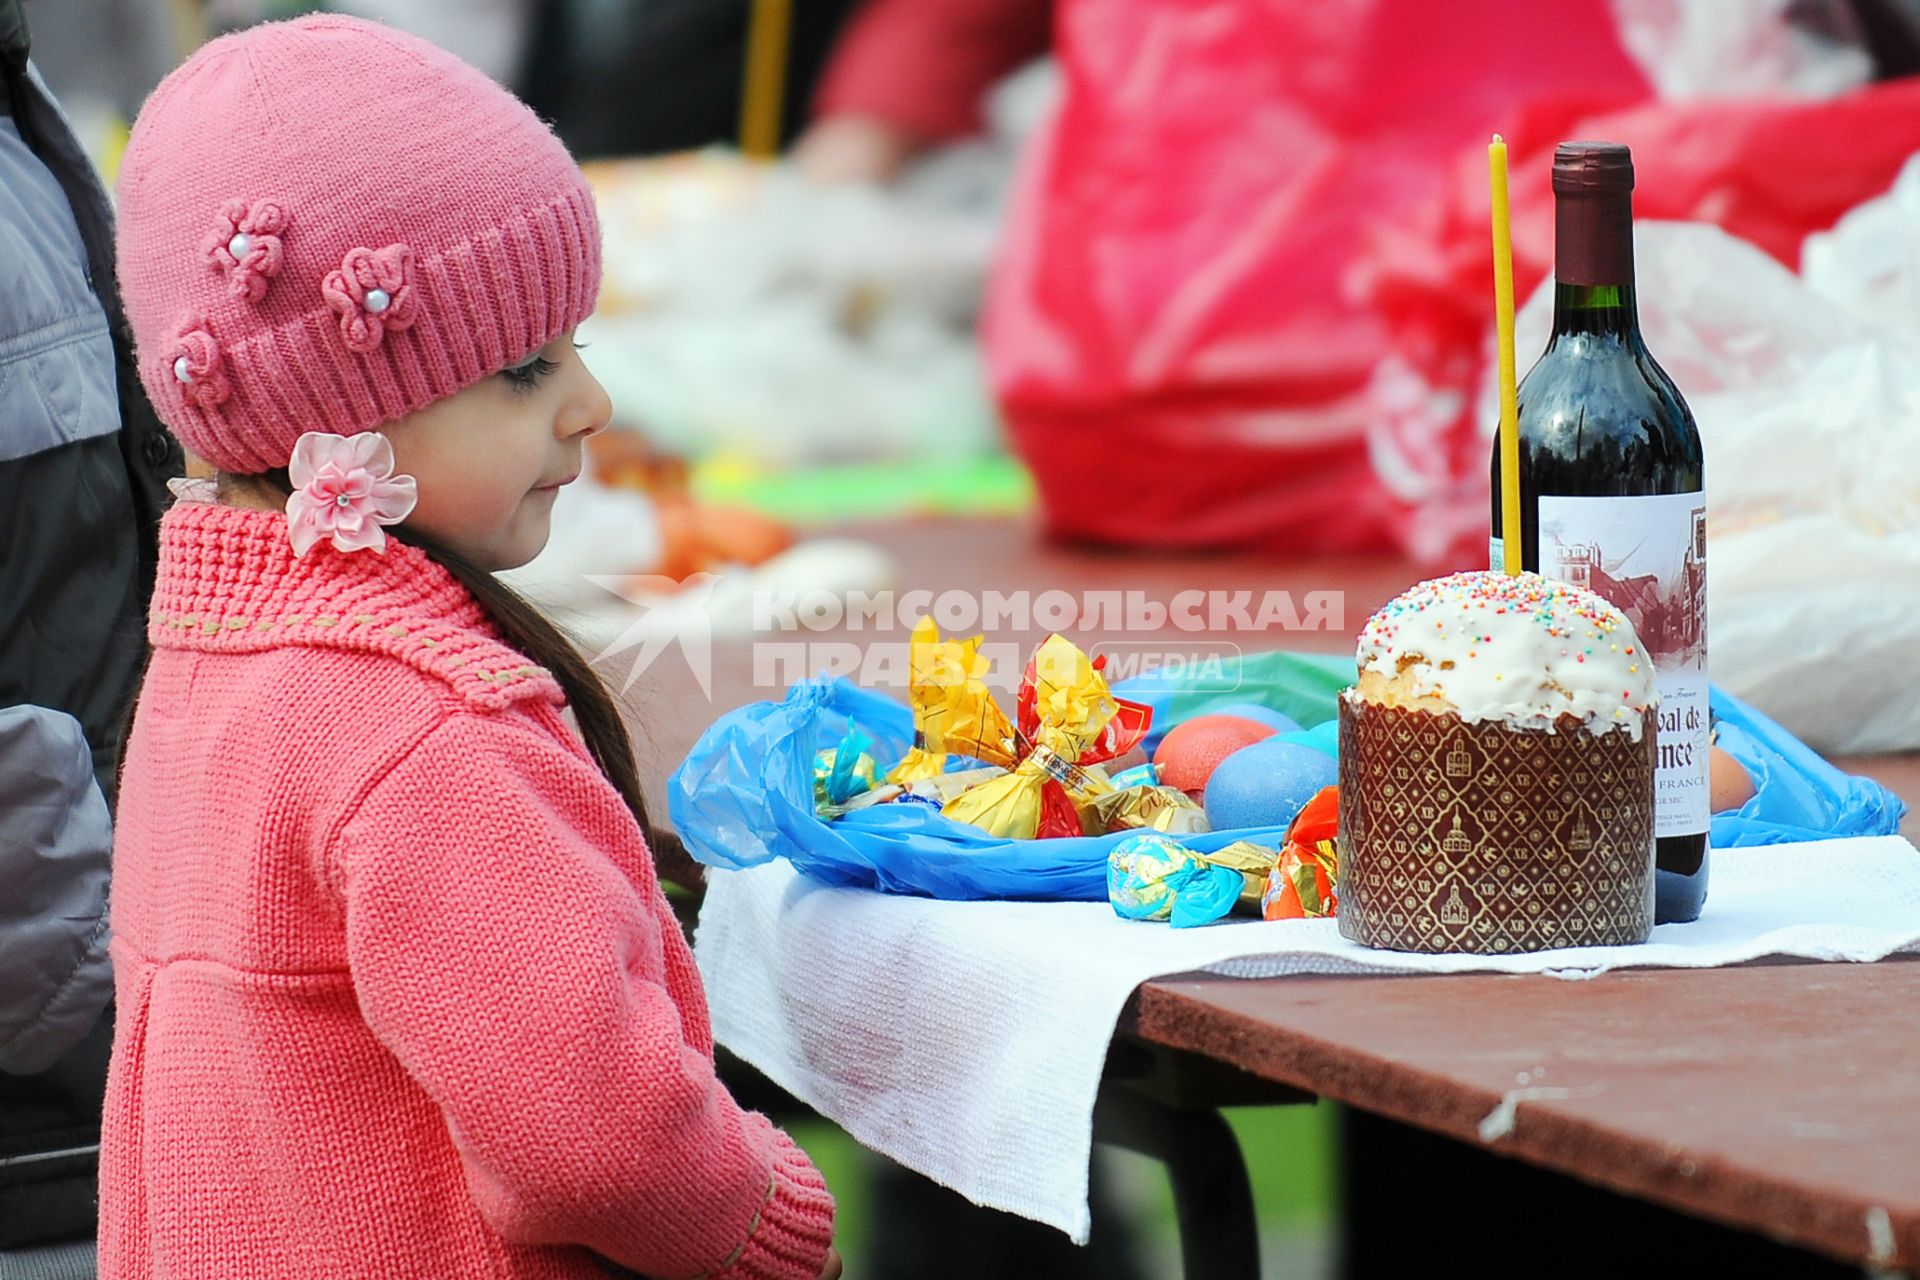 Христиане Новосибирска празднуют праздник Пасху. На снимке: ребенок рядом с пасхальным набором.